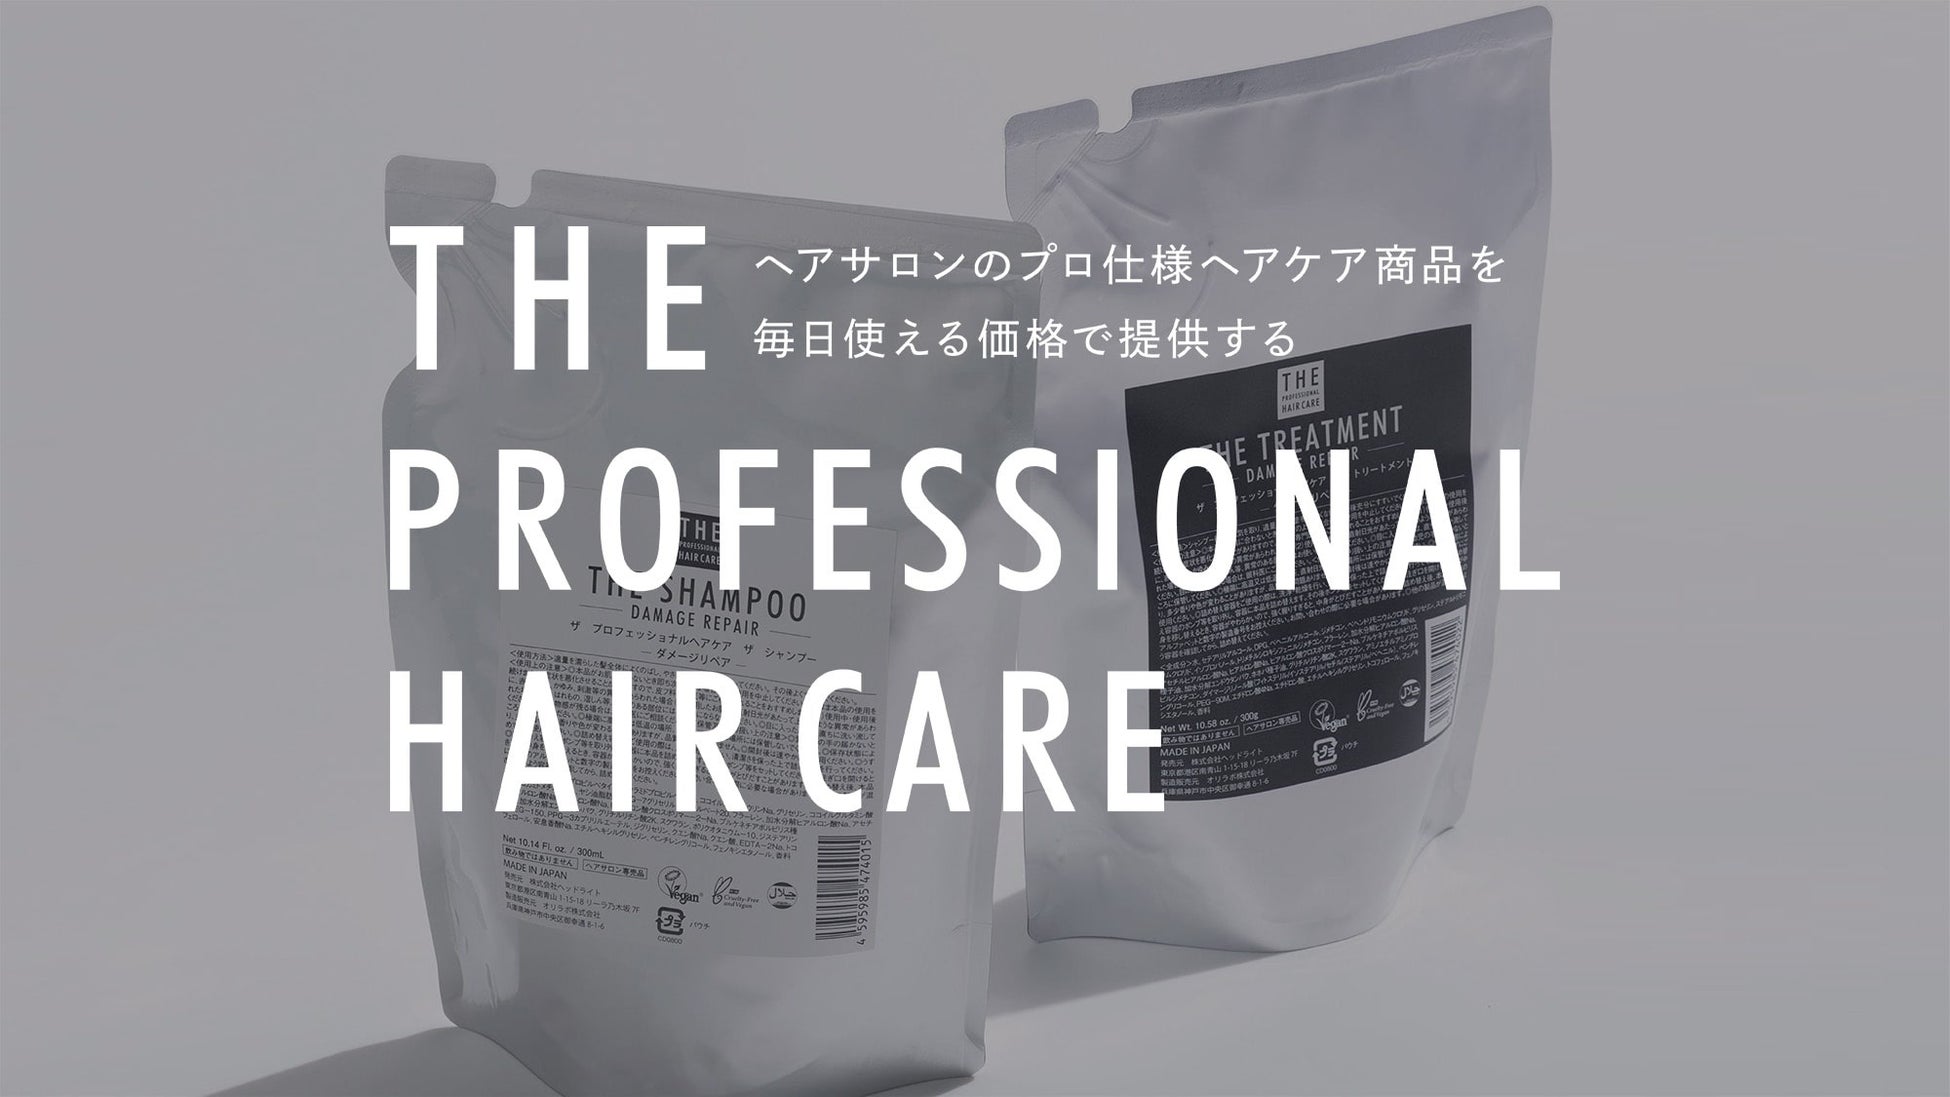 ヘアサロン用を毎日使えるお値段でご提供！新ヘアケアブランド「THE PROFESSIONAL HAIR CARE」の公式ECサイト...